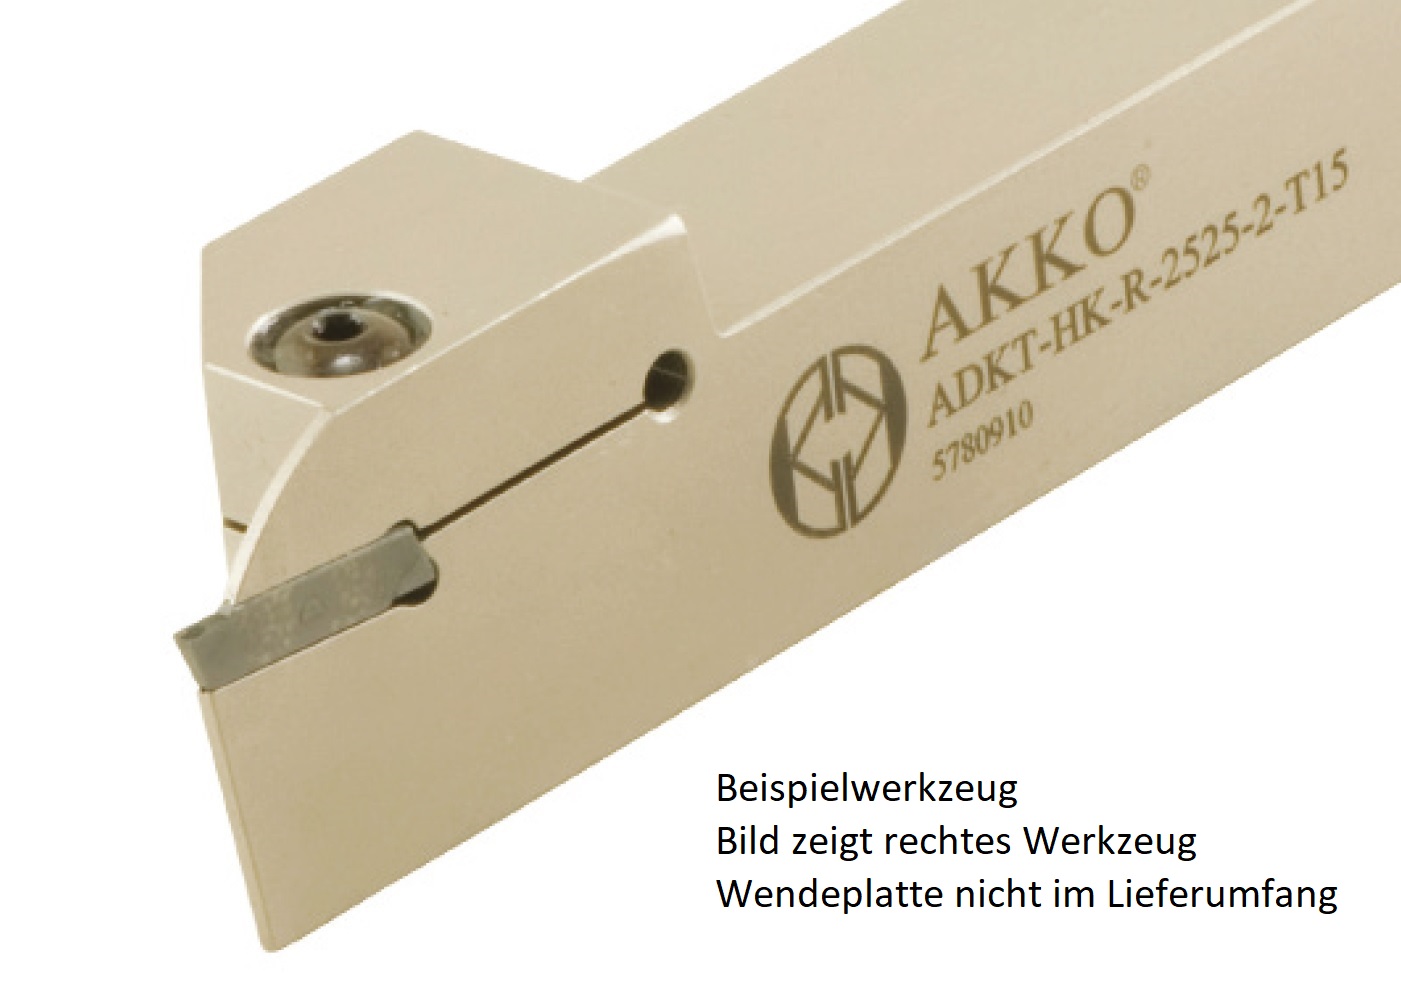 Abstechhalter ADKT-HK-R-2525-3-T22